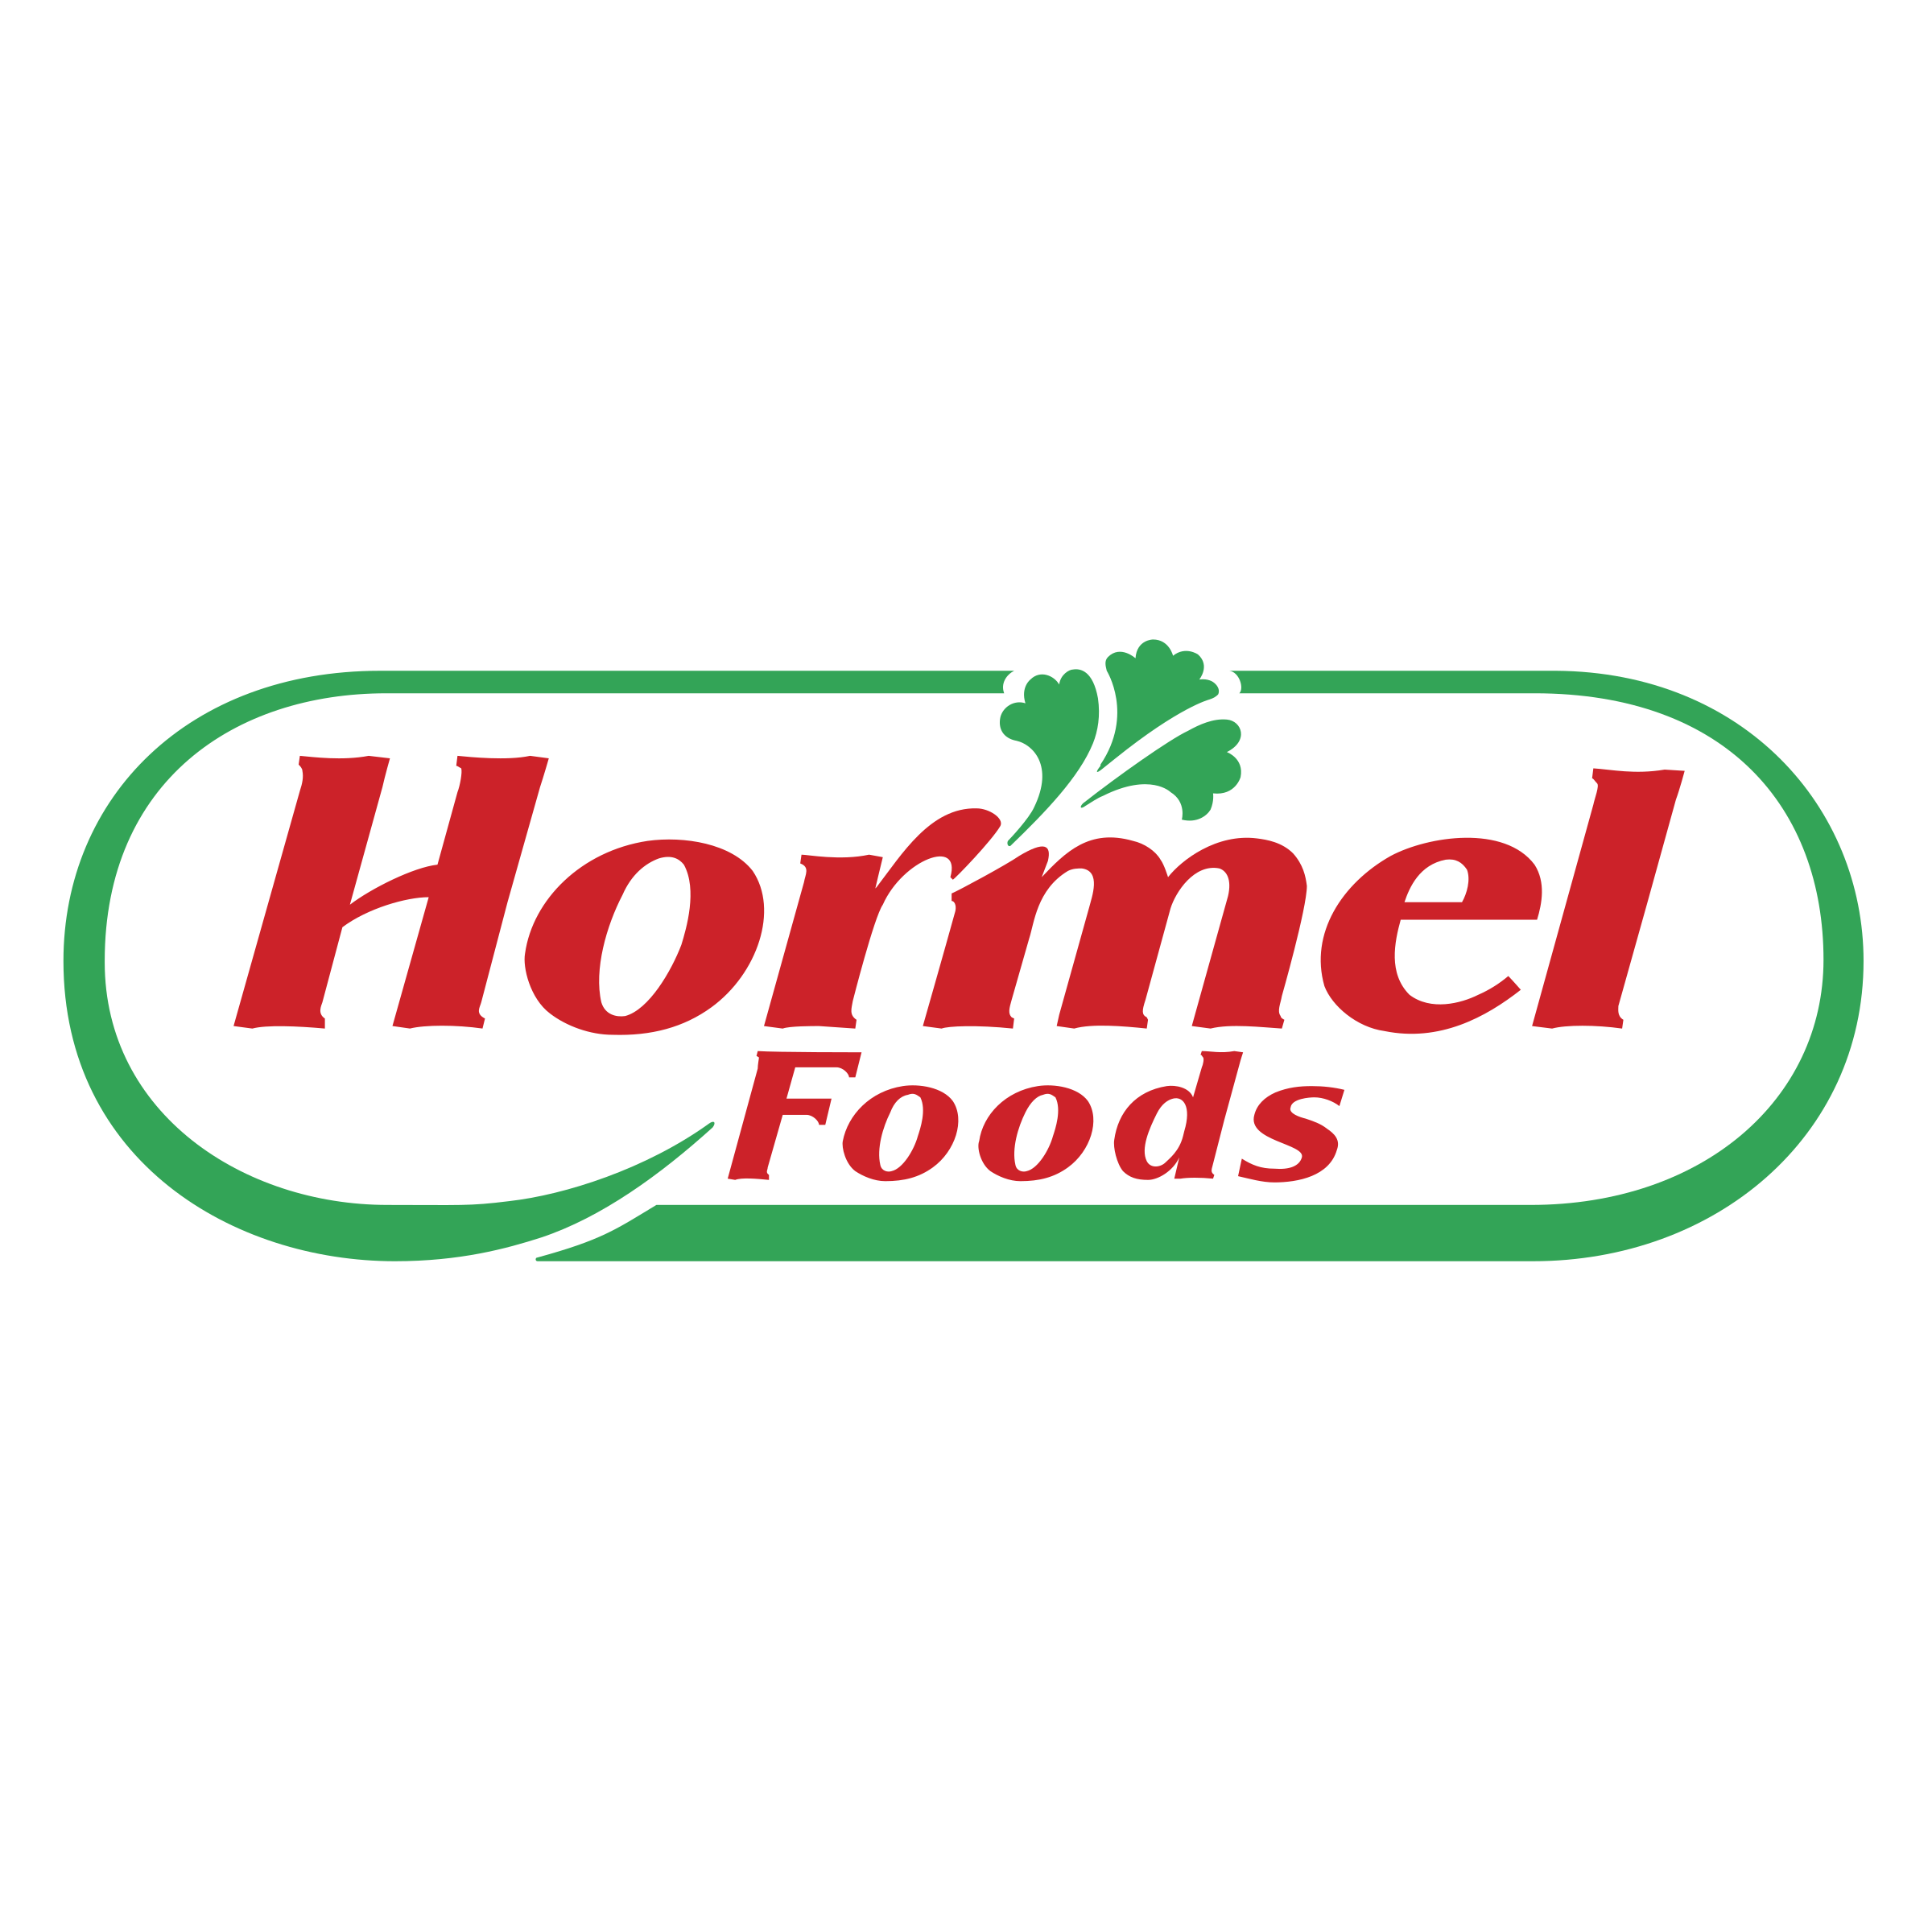 hormel-foods-1-logo-png-transparent